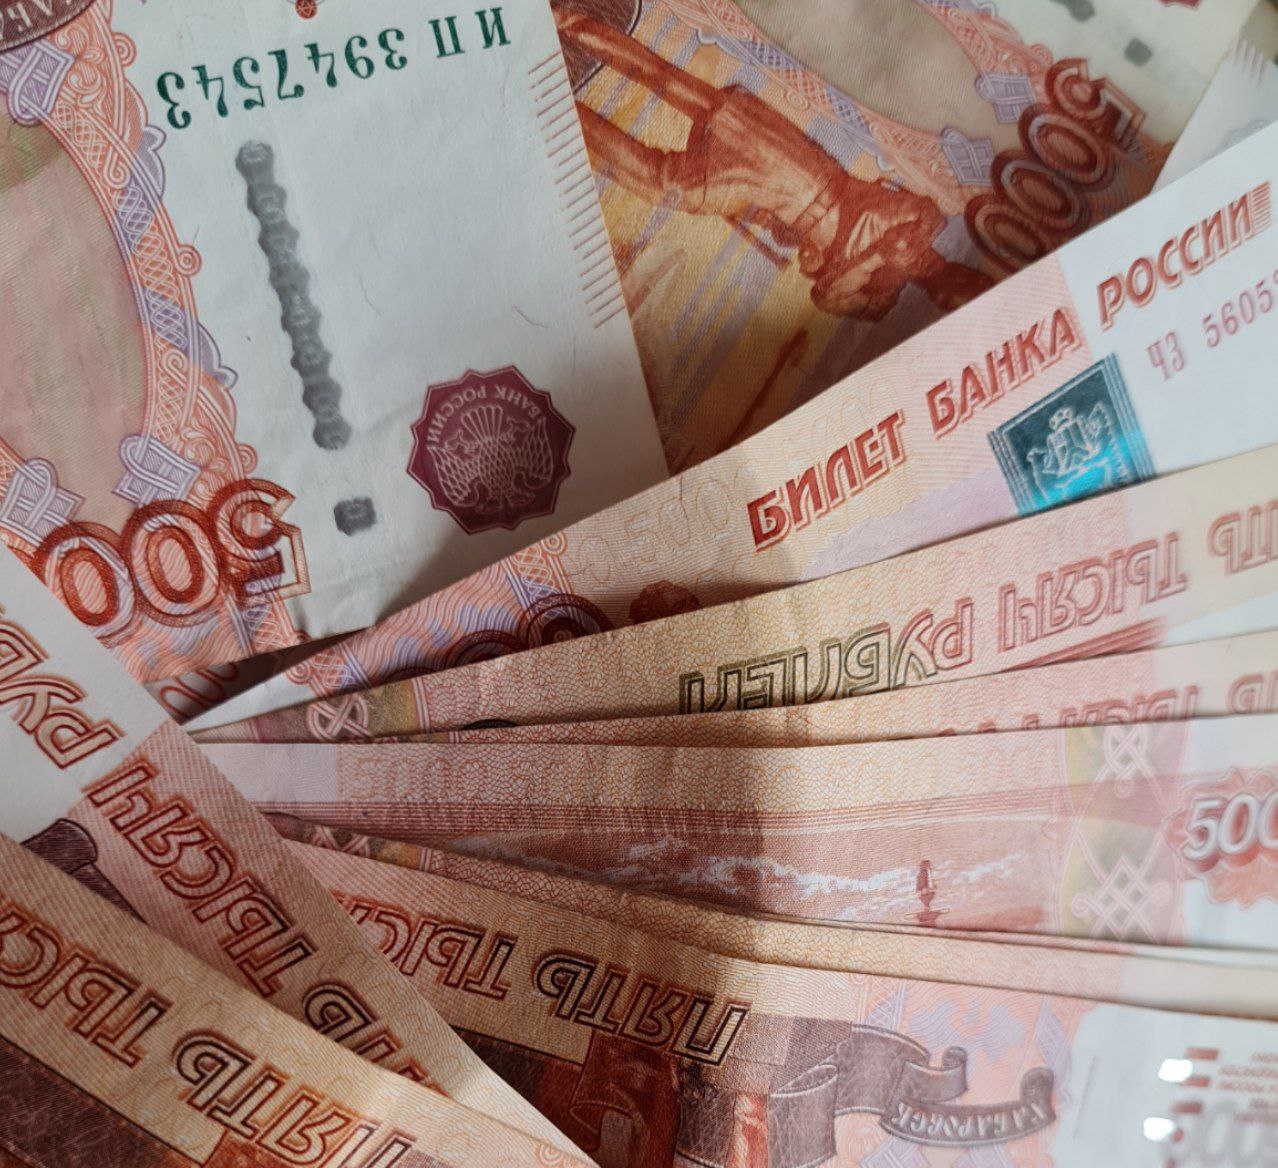 Начальник маркетинга одной из пензенских фирм погорел на 49 тысячах рублей